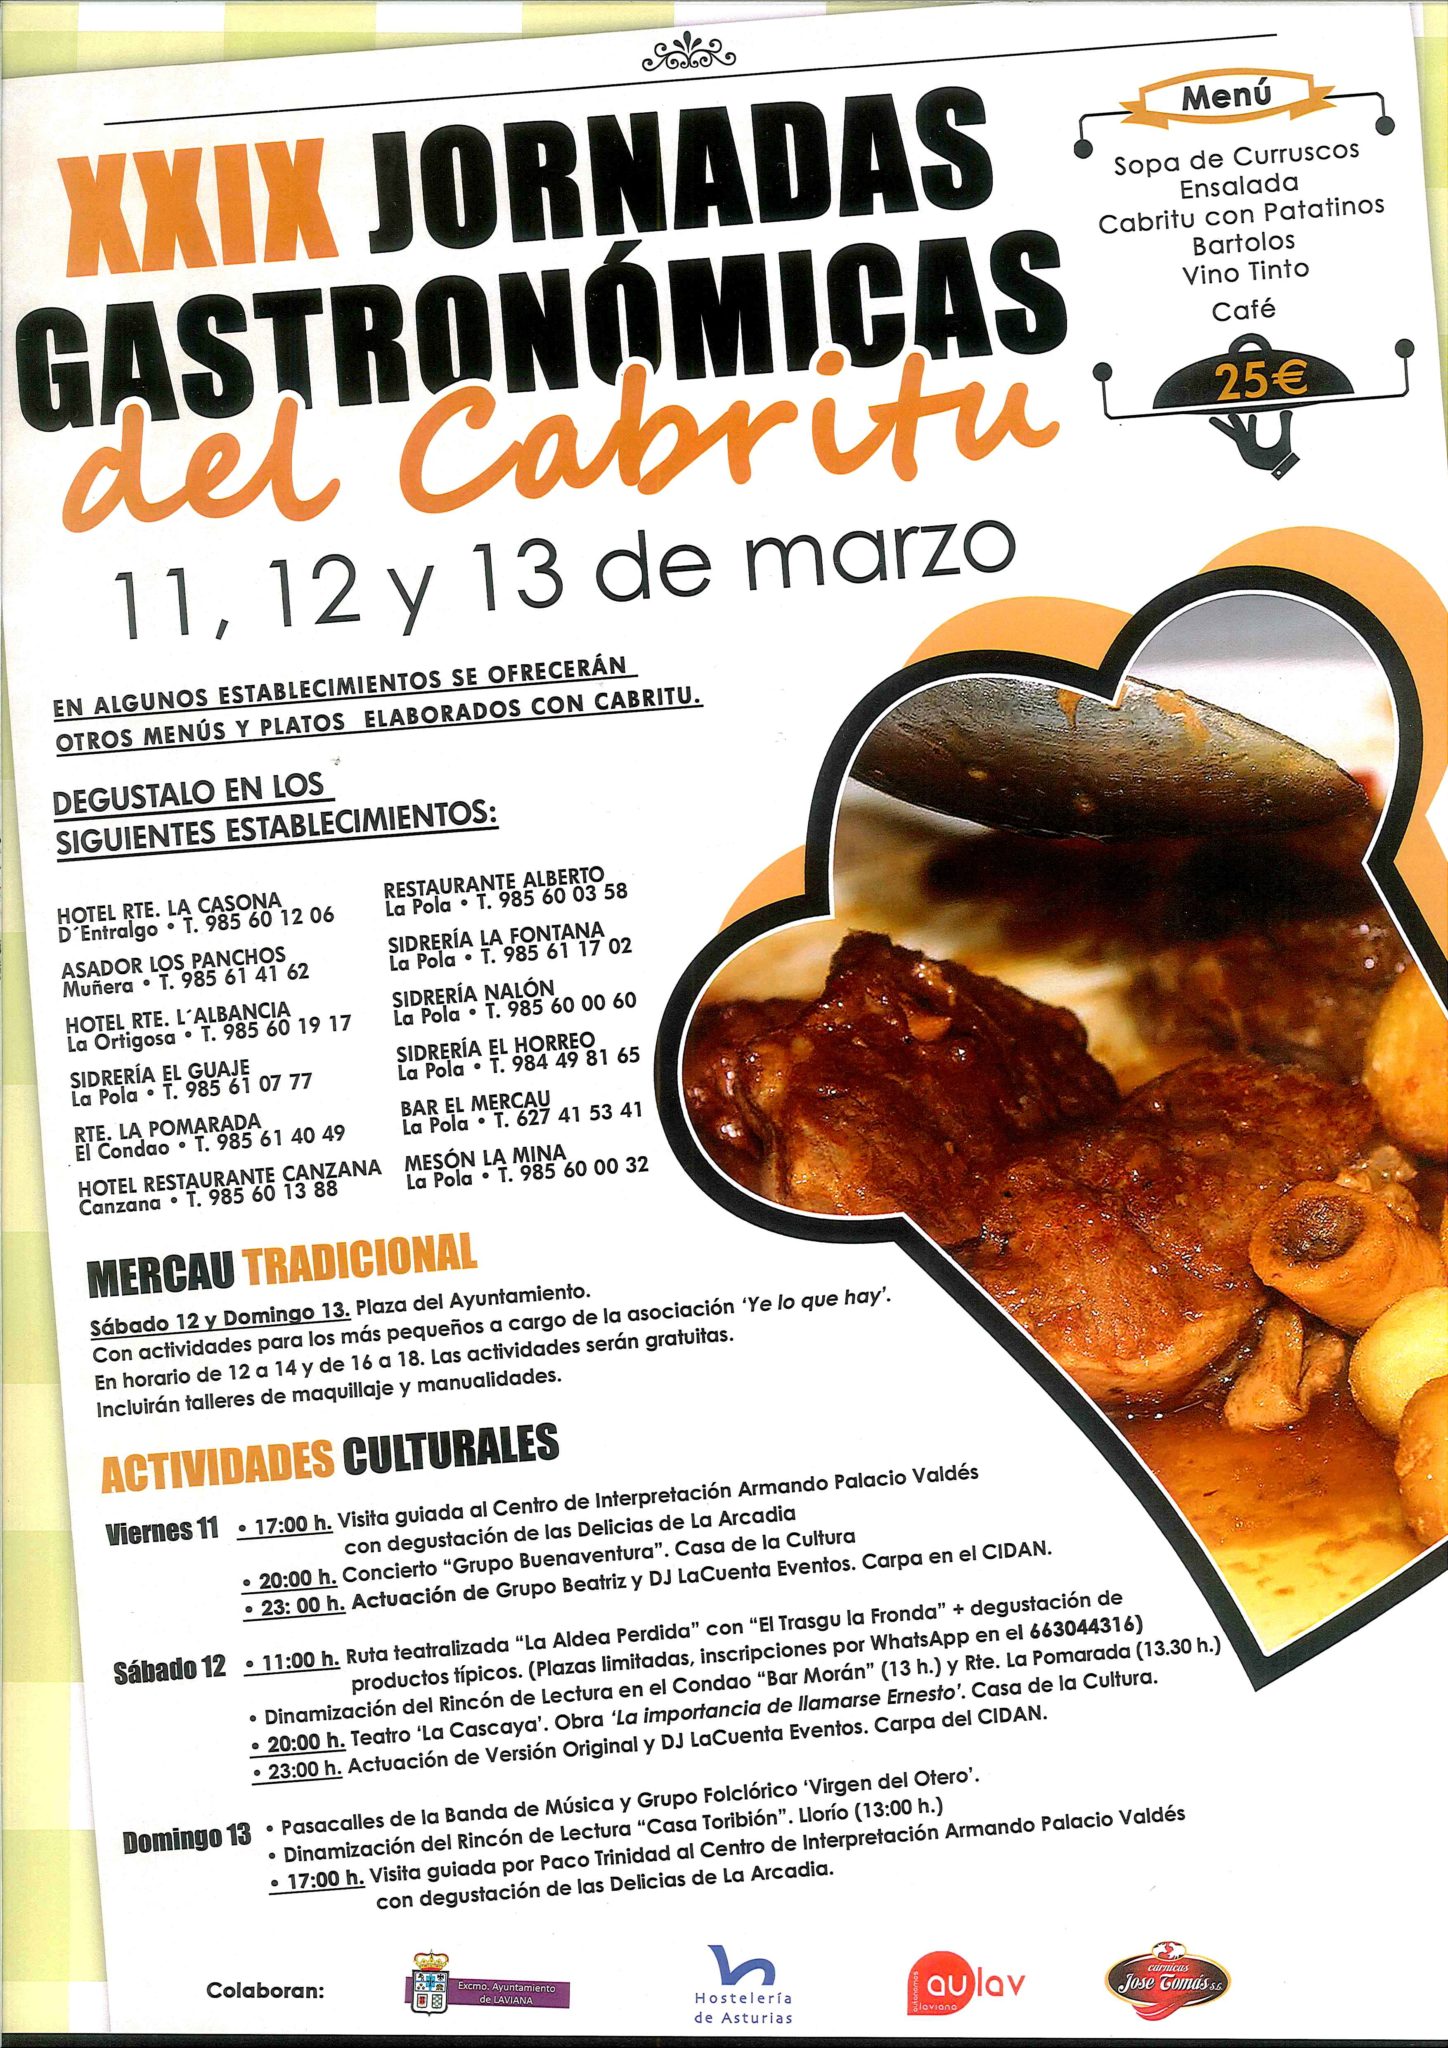 Programa de las XXIX JORNADAS GASTRONÓMICAS DEL CABRITU del 11 al 13 de Marzo en Pola de Laviana, Asturias